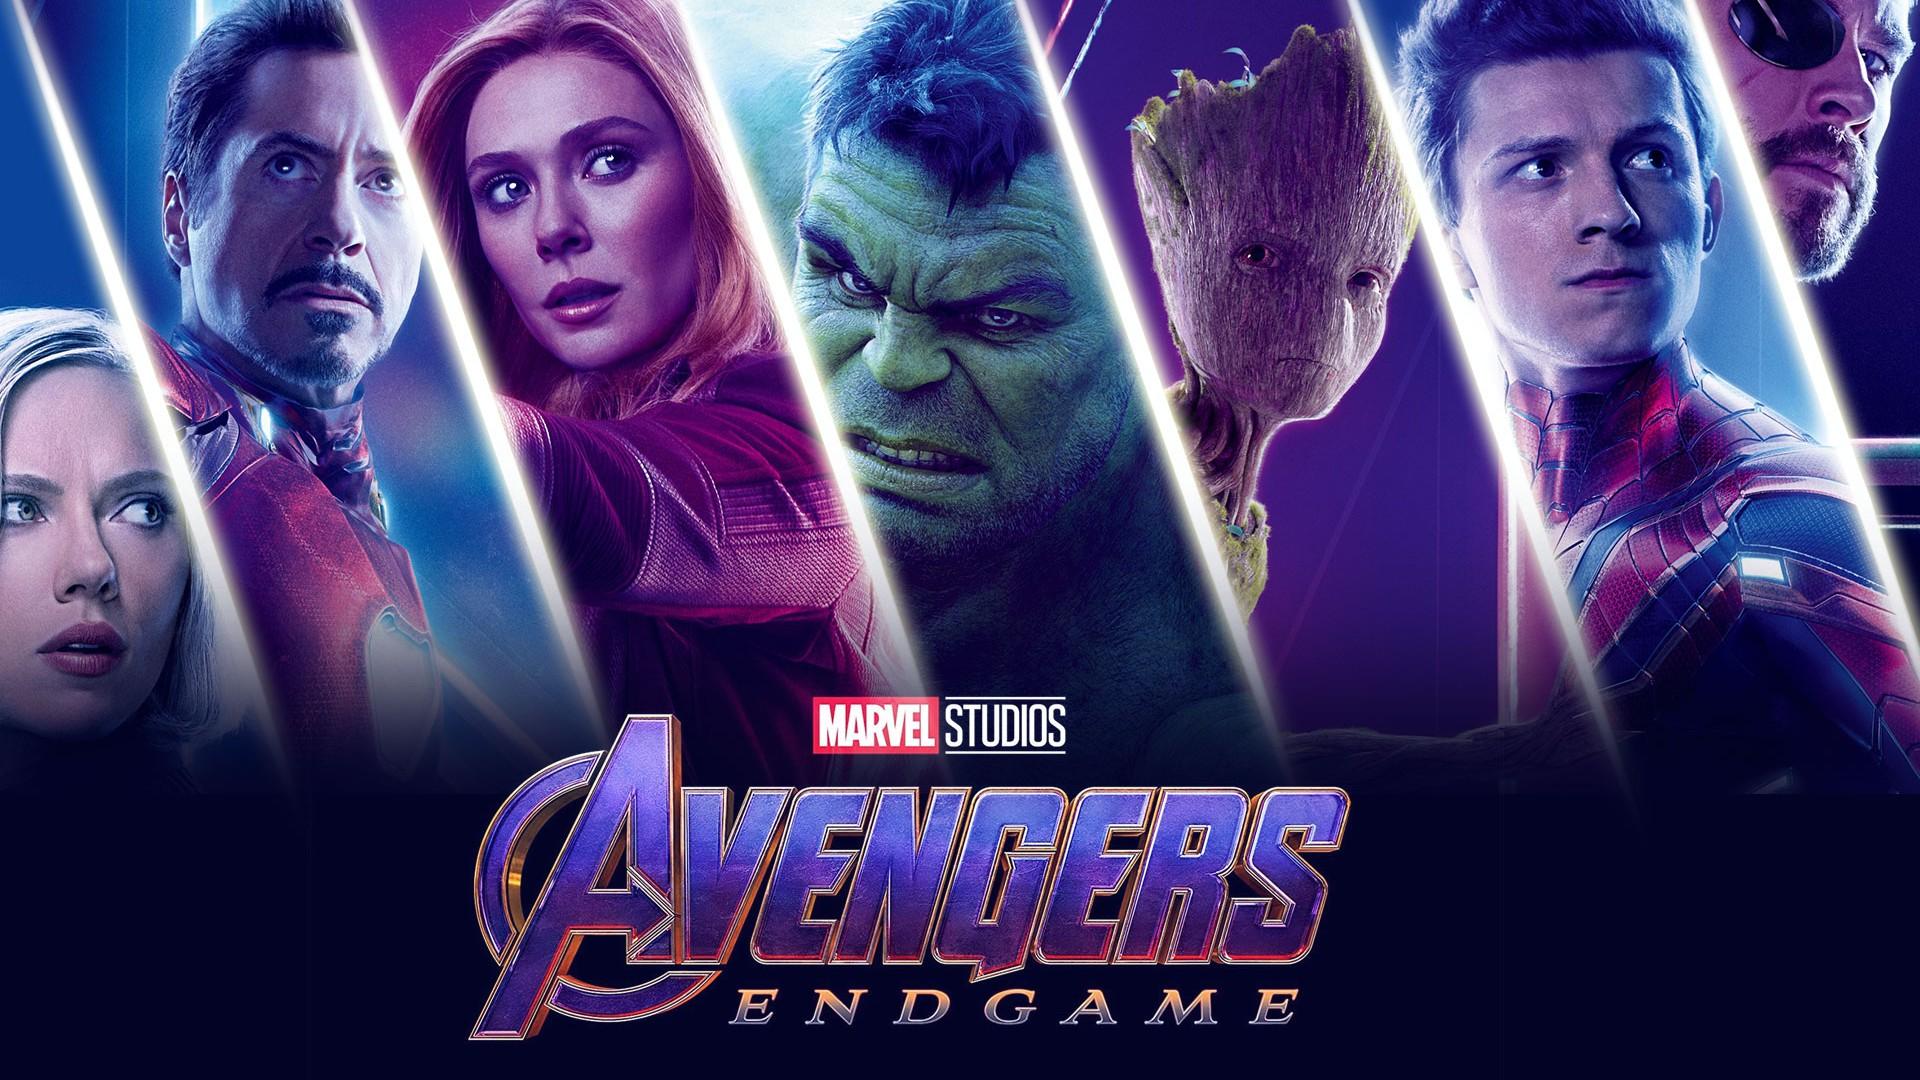 Marvel's Avengers: Endgame Wallpaper